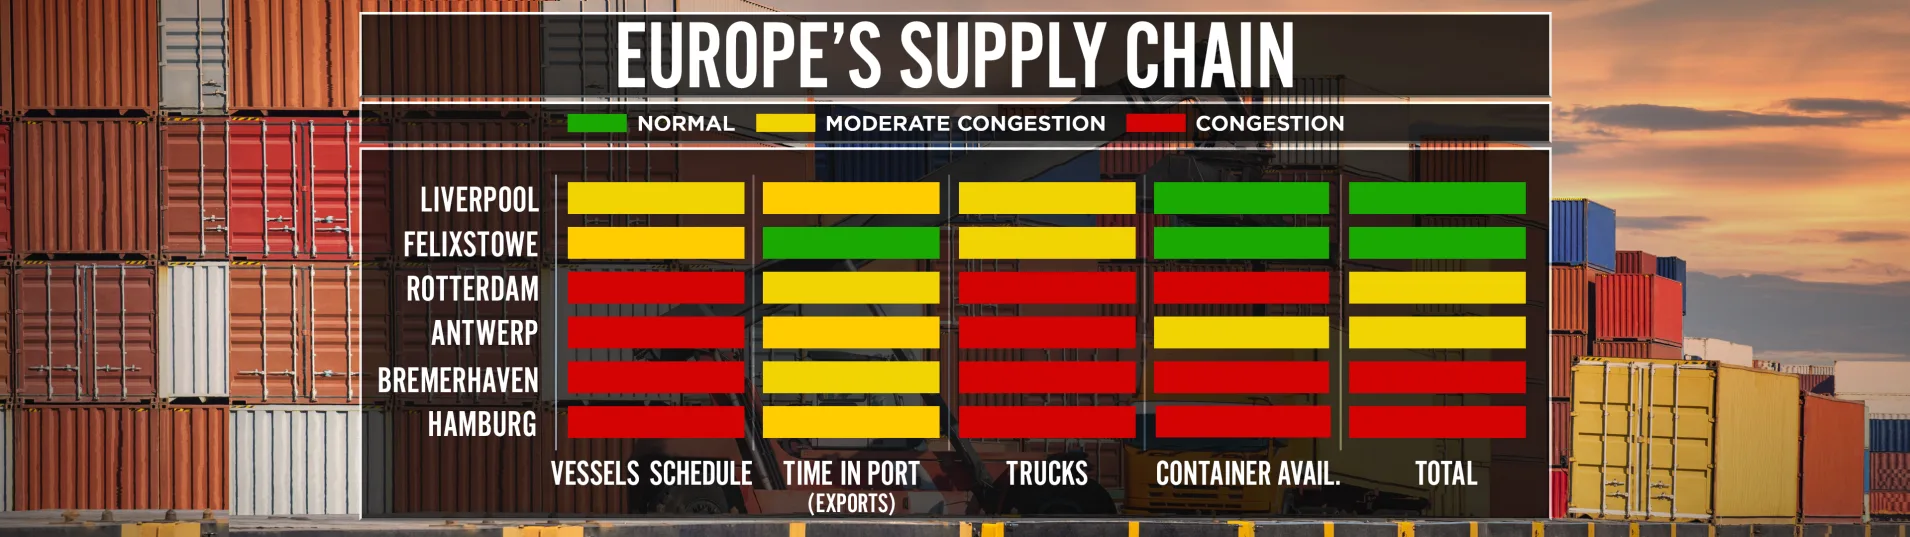 Supply chain EU